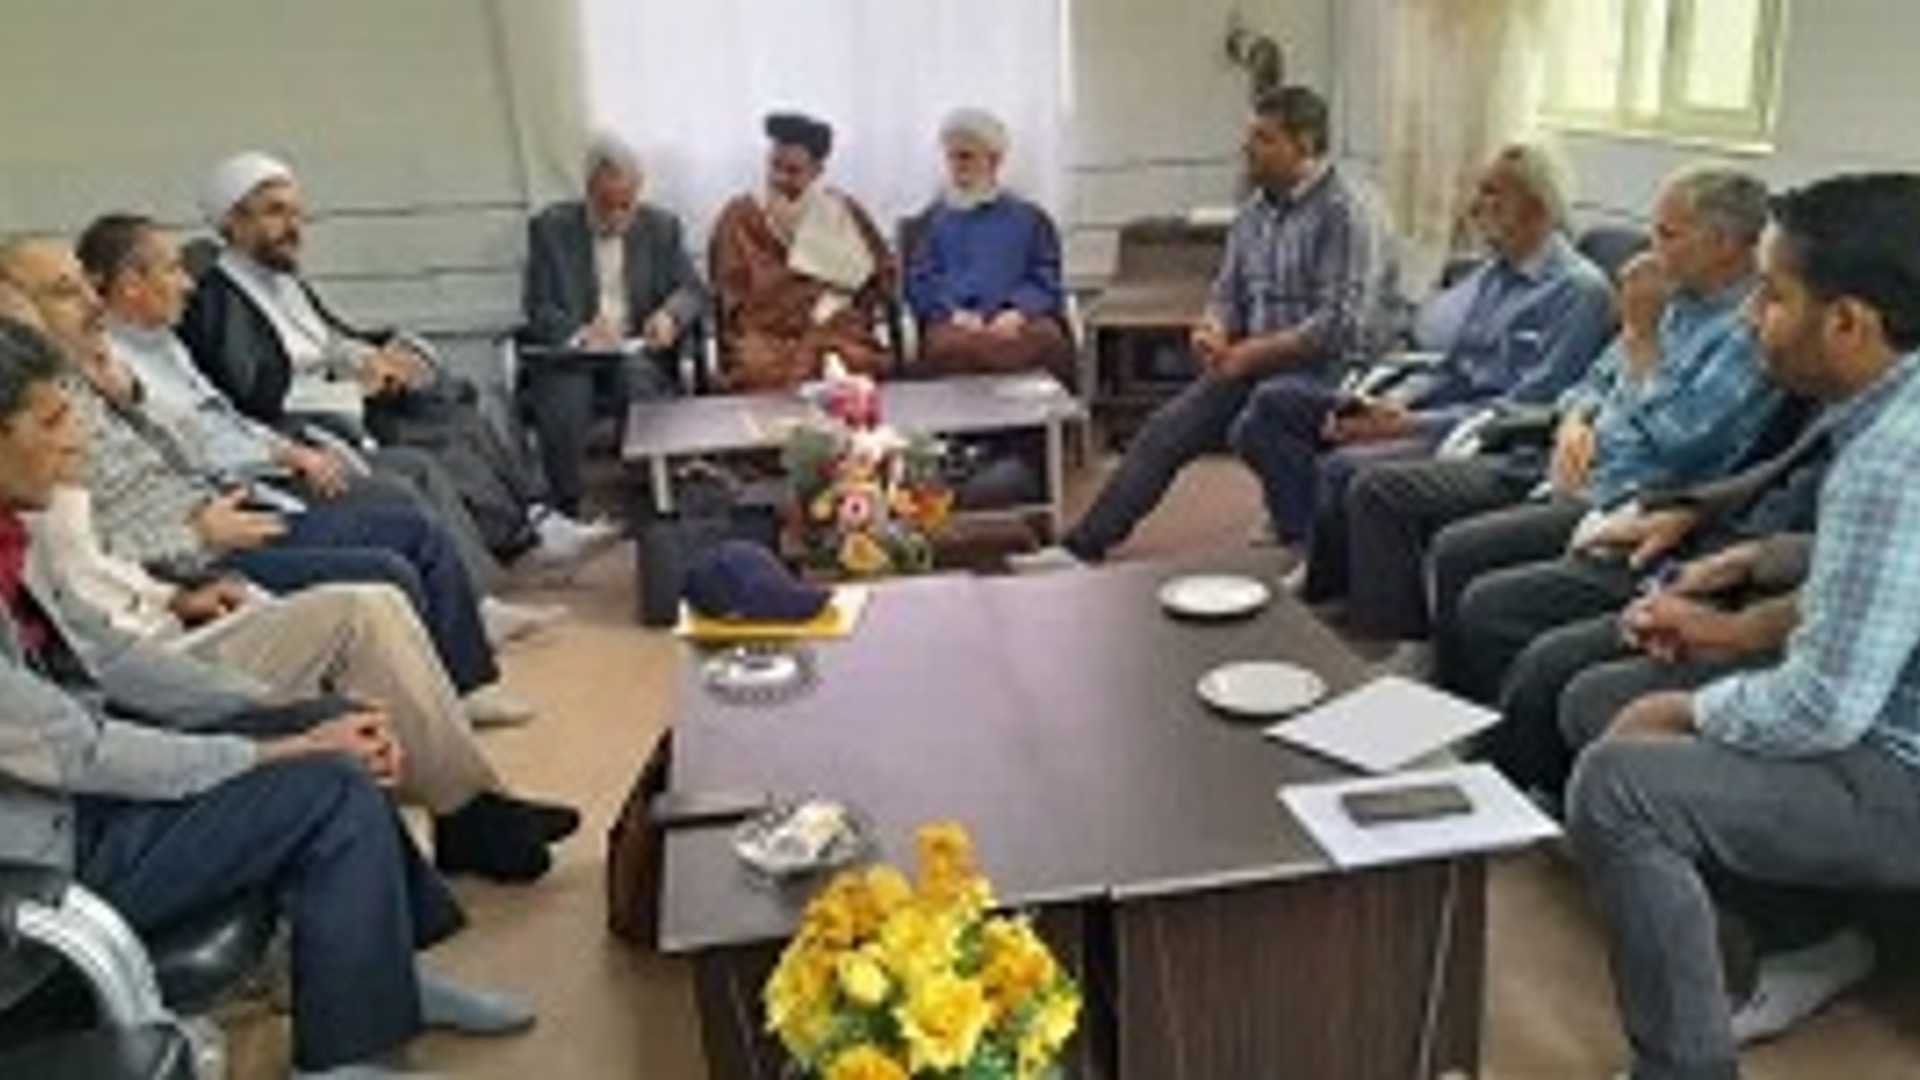 جلسه ستاد بازسازی عتبات عالیات شهرستان شازند برگزار شد .